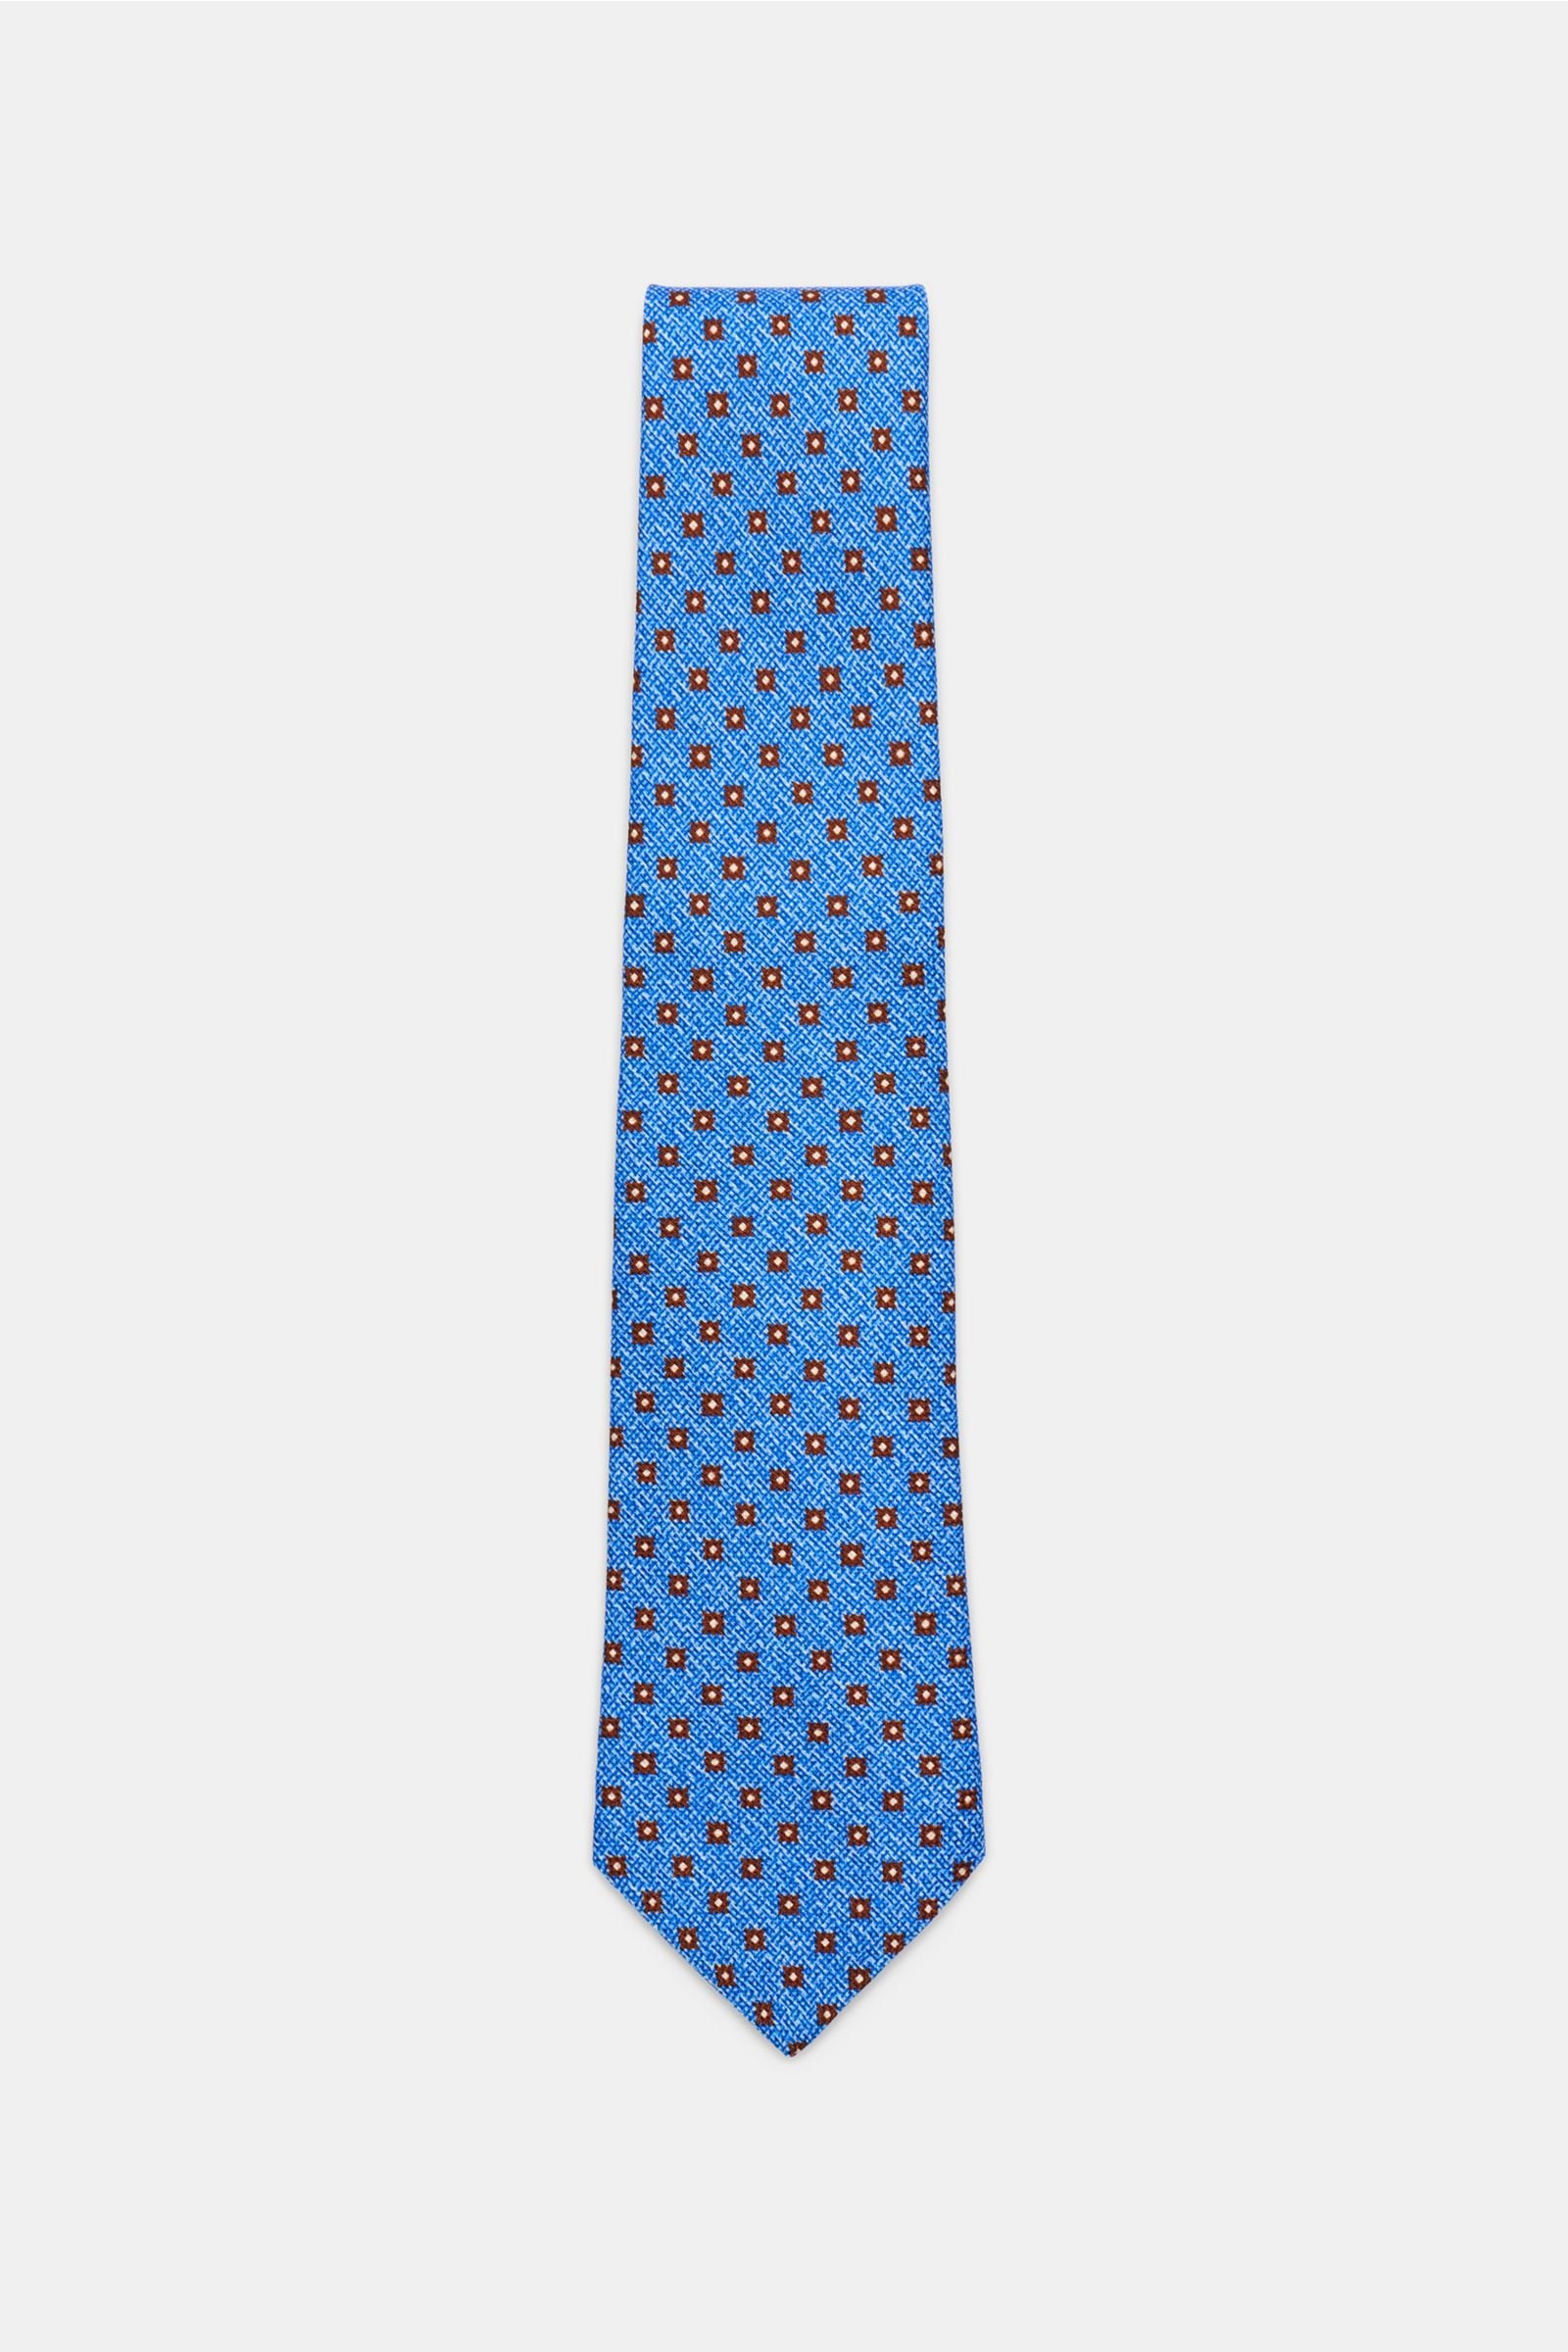 Silk tie blue/brown patterned